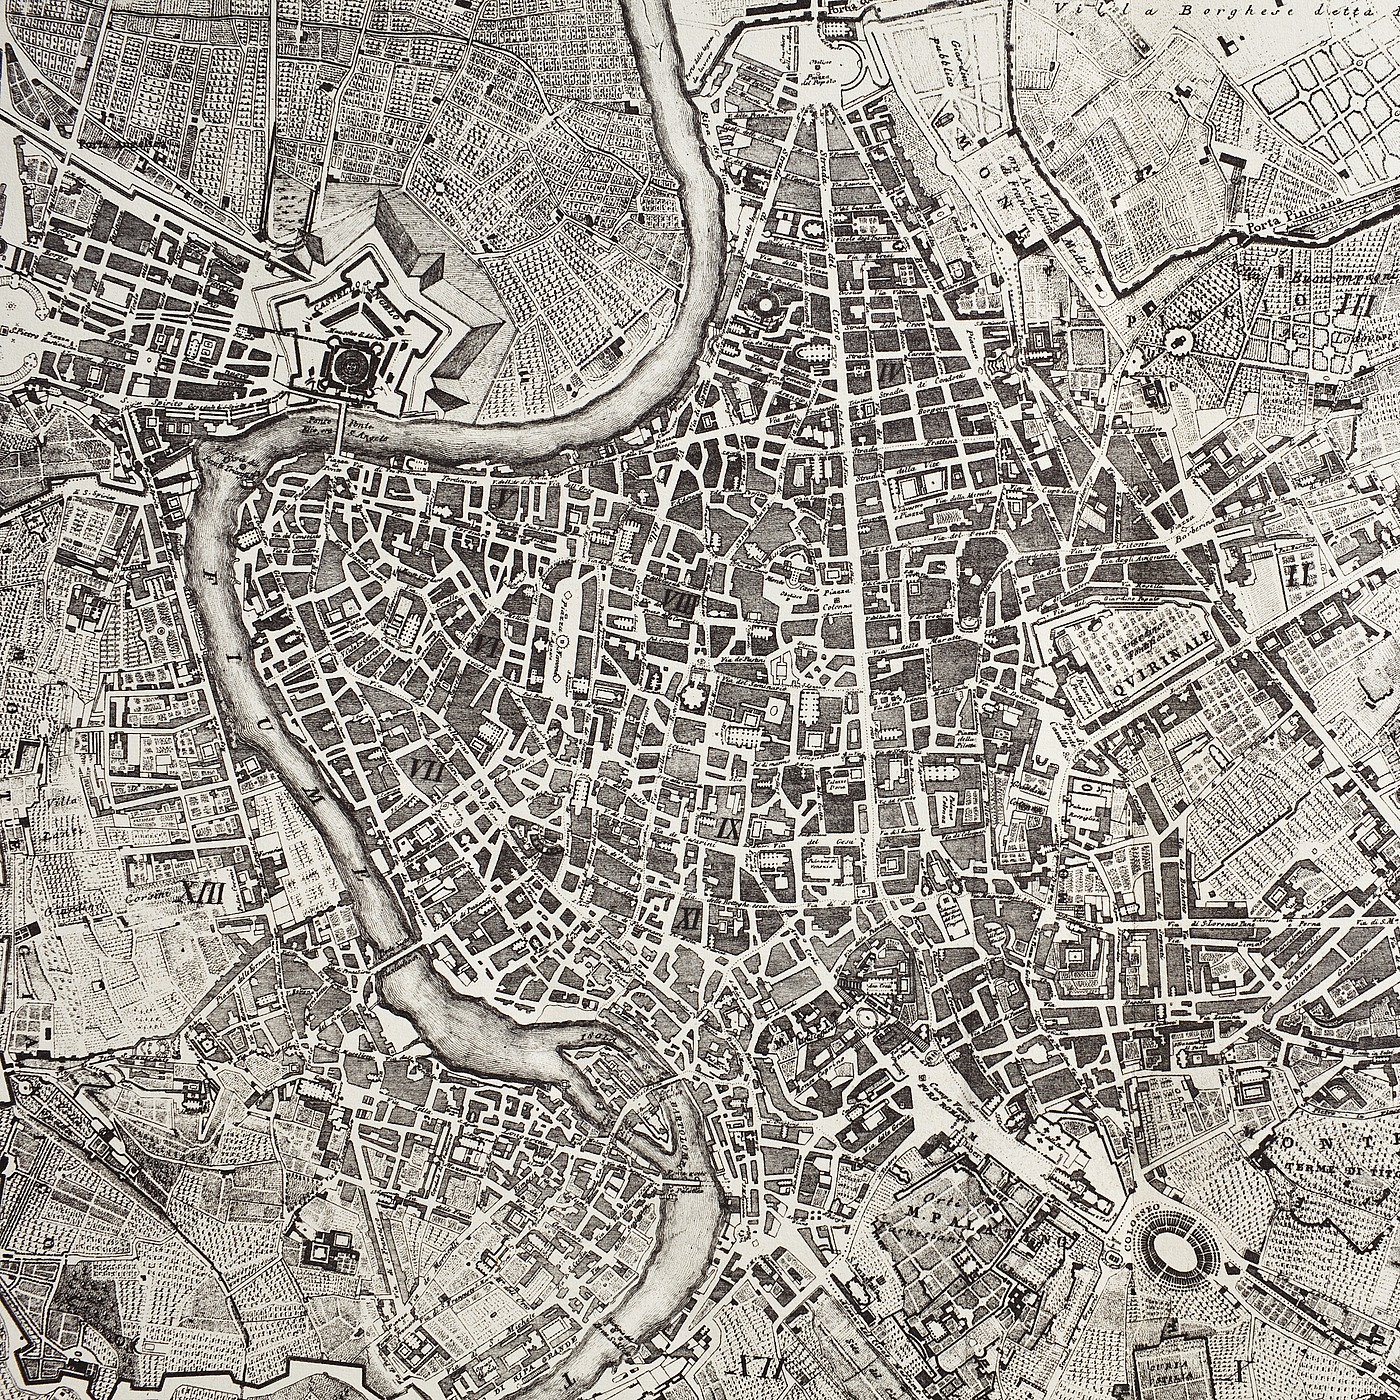 Pietro Ruga: Pianta topografica della città di Roma dell' anno 1820